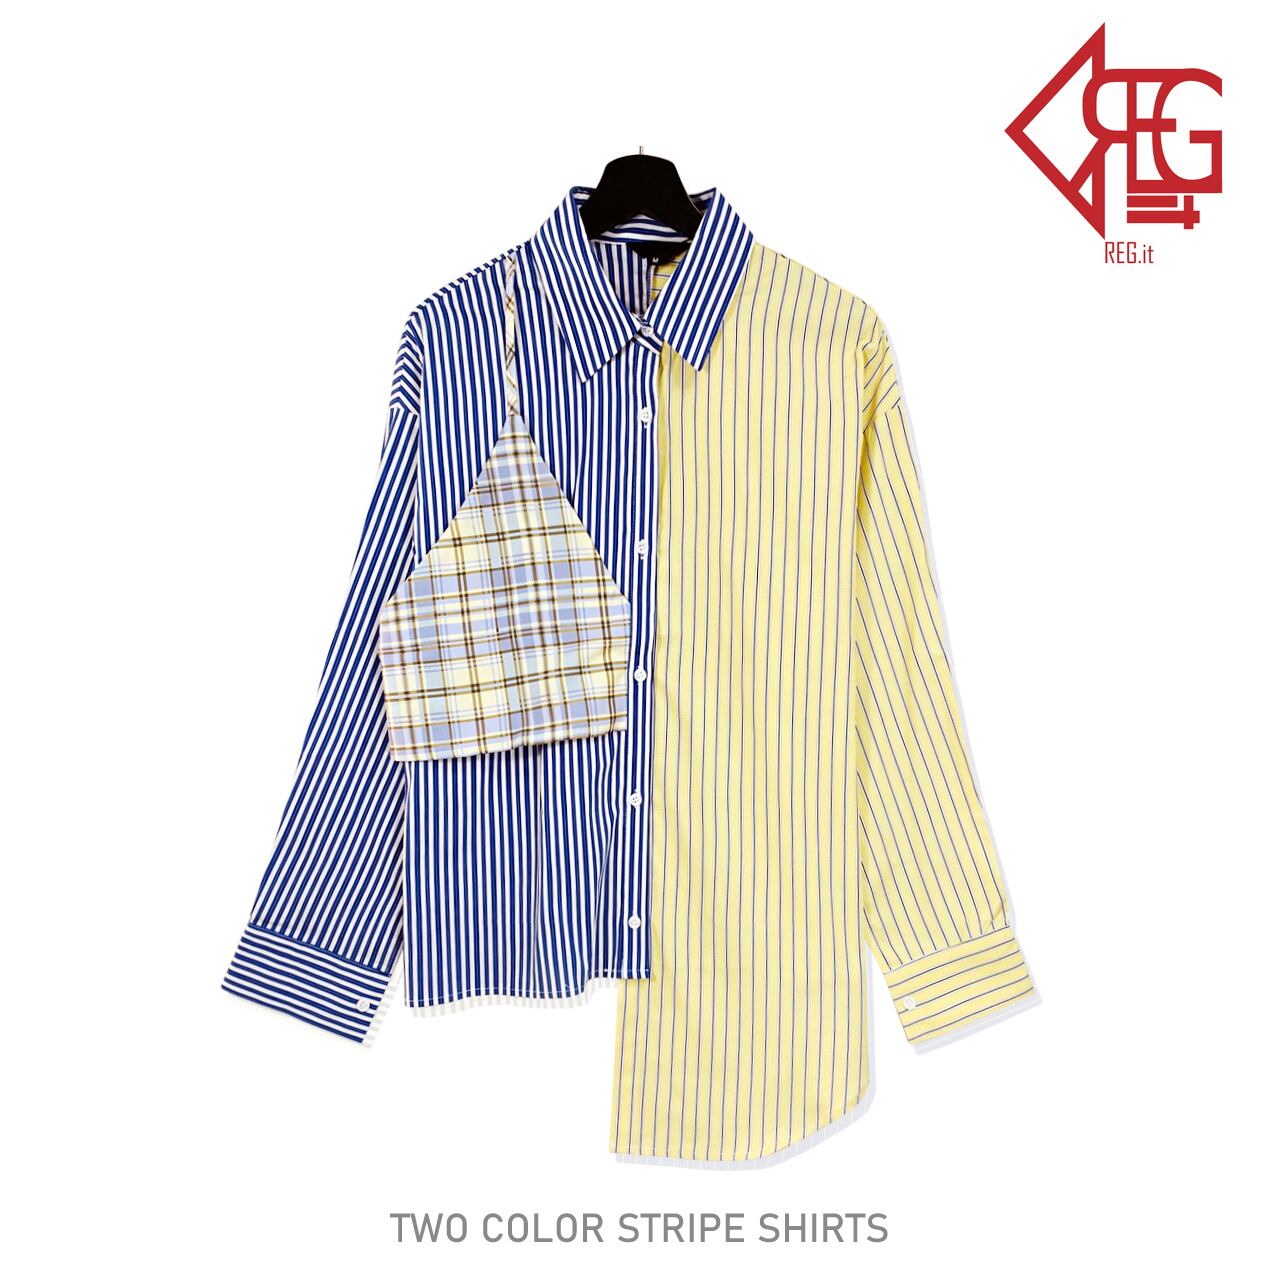 Regit 即納 Two Color Stripe Shirts 韓国ファッション 韓国服 ユニークなシャツ 個性的なシャツ ロングシャツ ストライプシャツ おしゃれ かわいい Regit